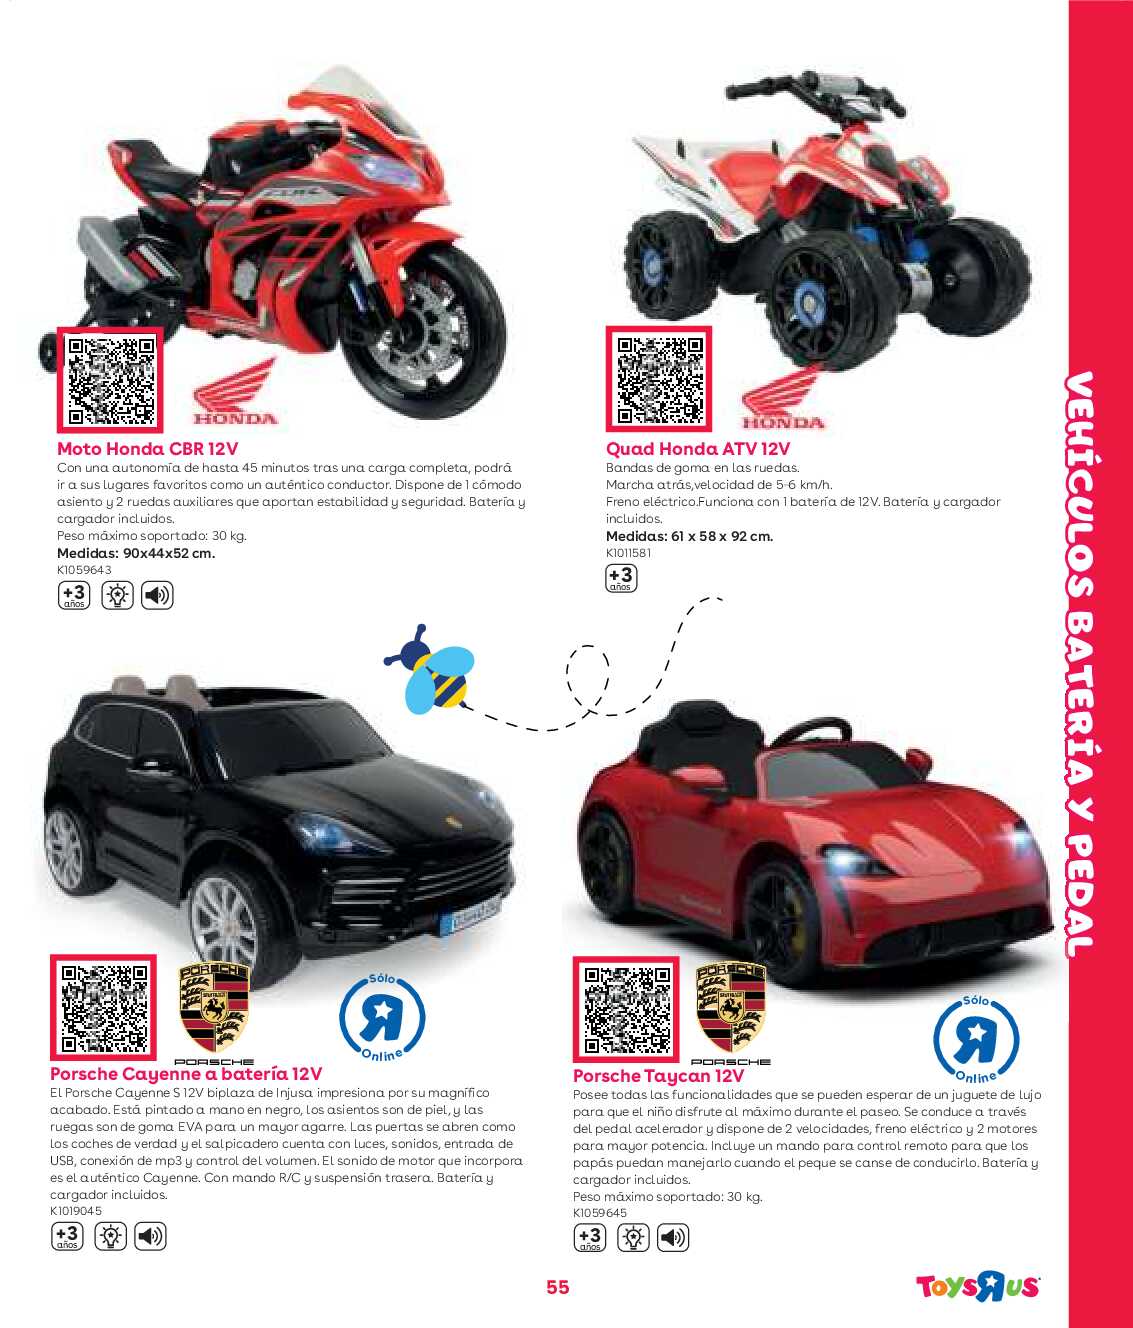 Guía aire libre Toys R Us. Página 55